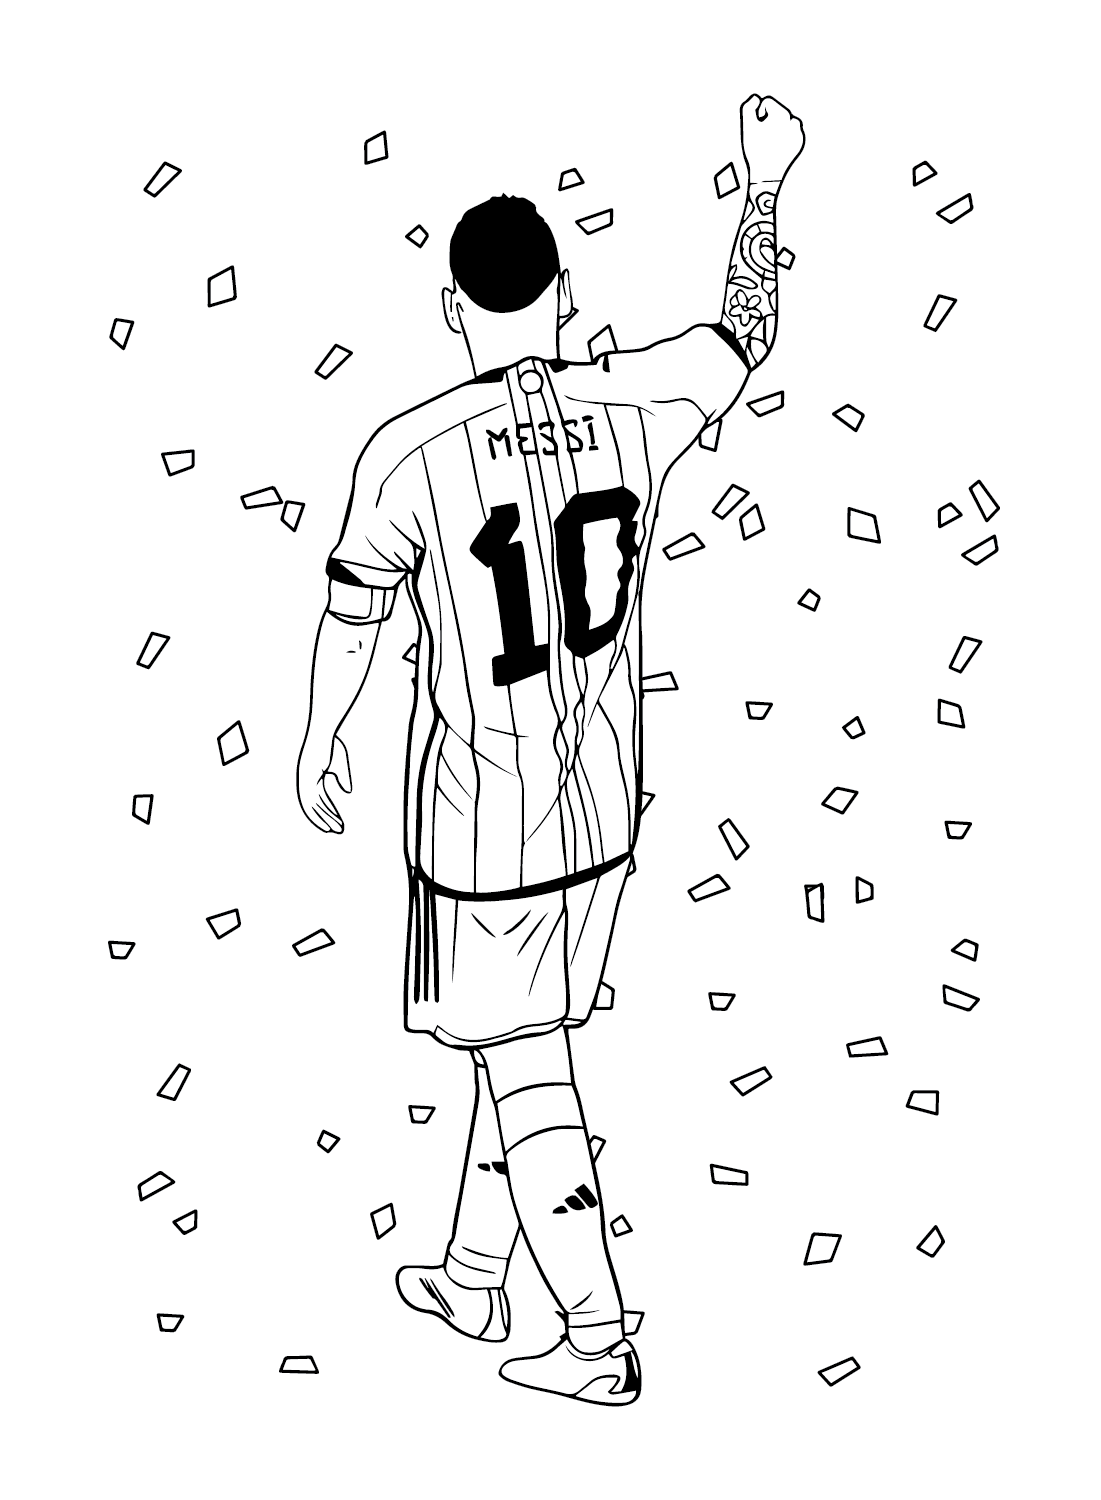 Messi puede colorear de Lionel Messi